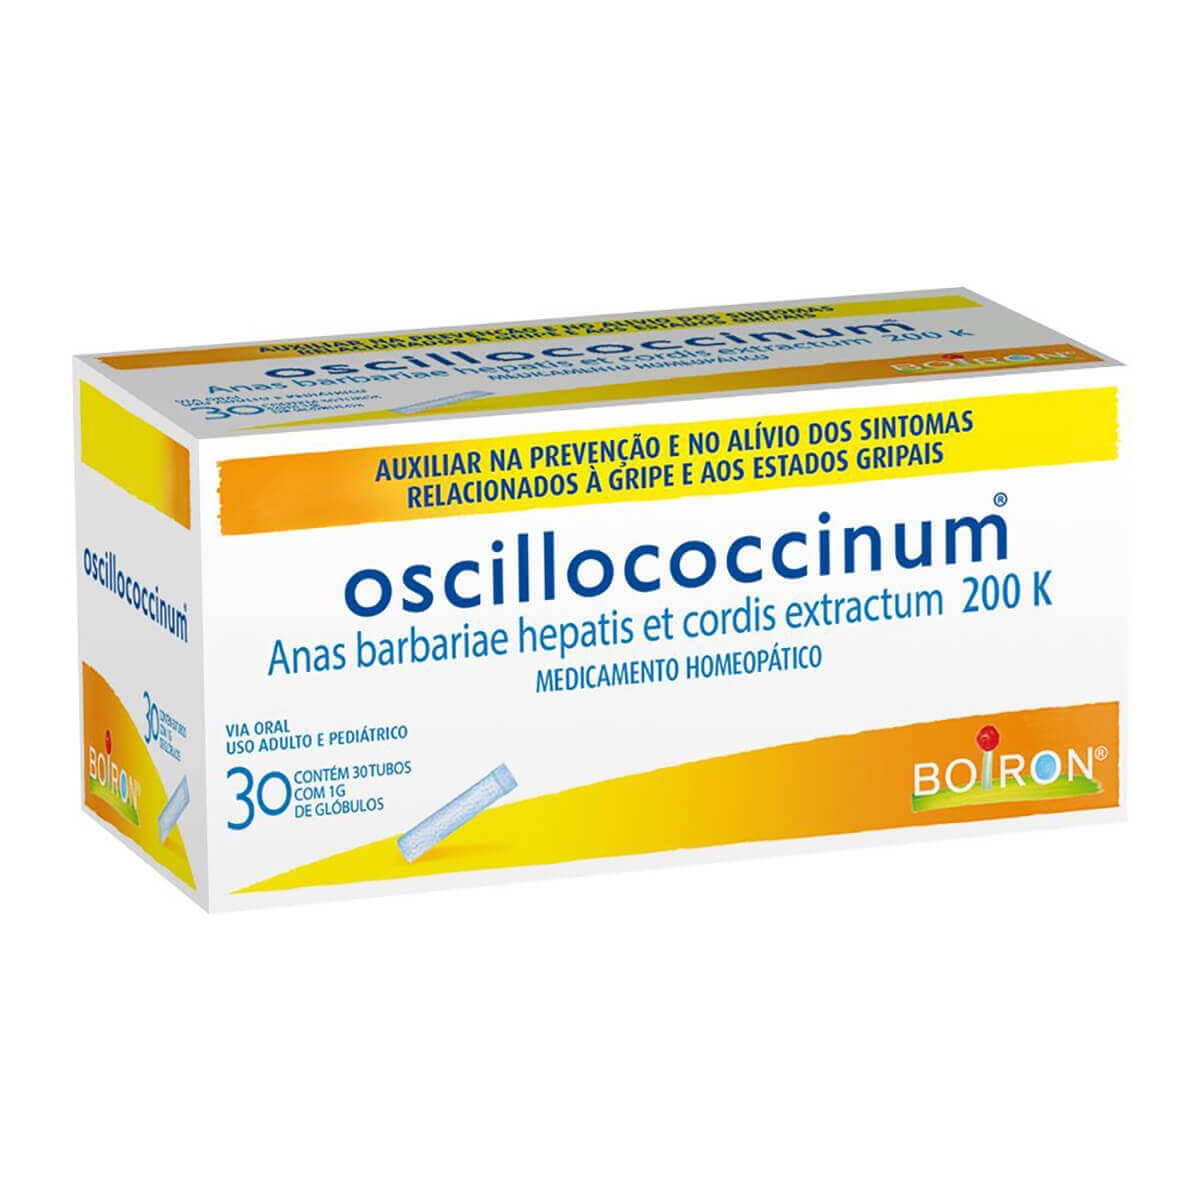 Oscillococcinum 200k Anas Barbariae Hepatis Et Cordis Extractum 200k 30 Tubos de 1g cada